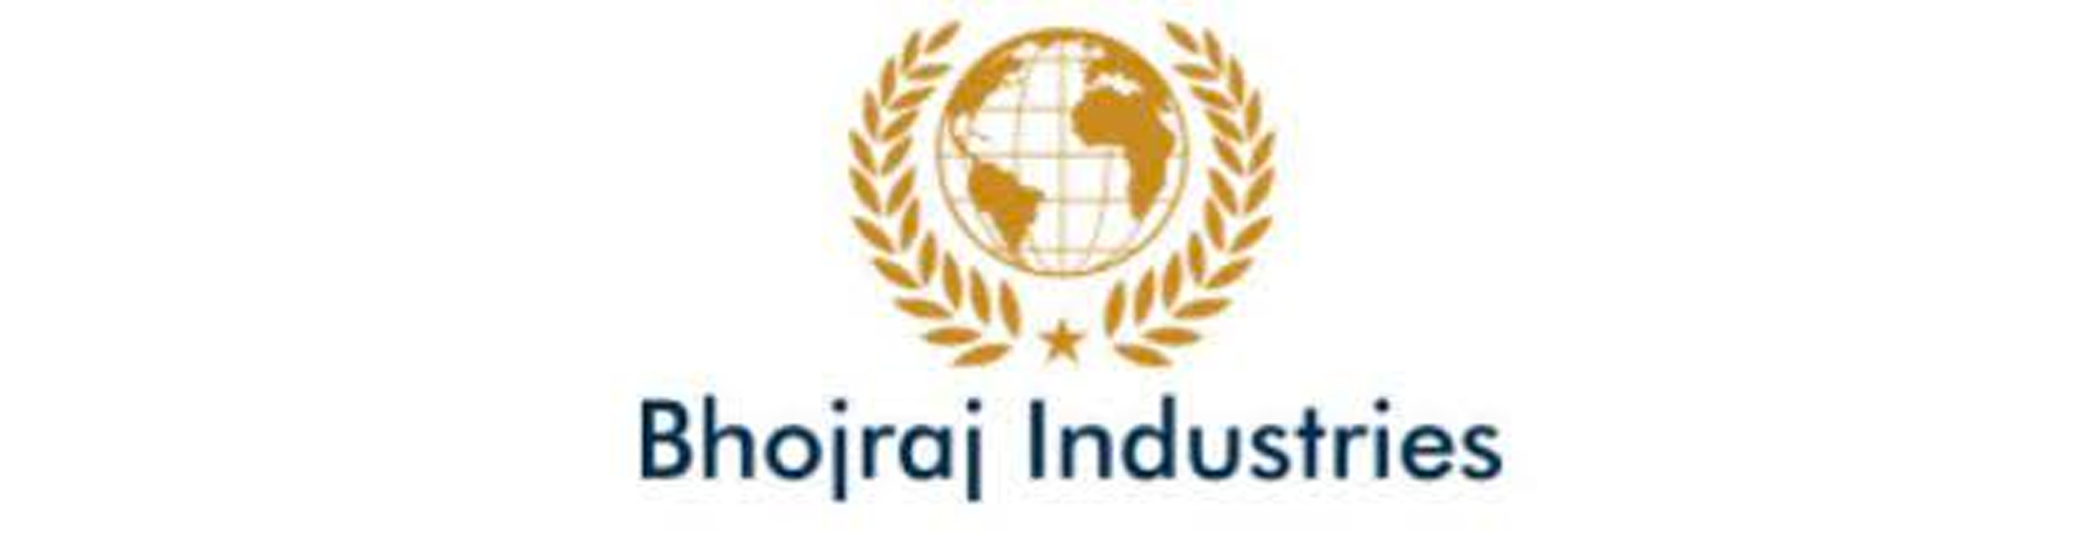 Bhojaraj Industries Ltd